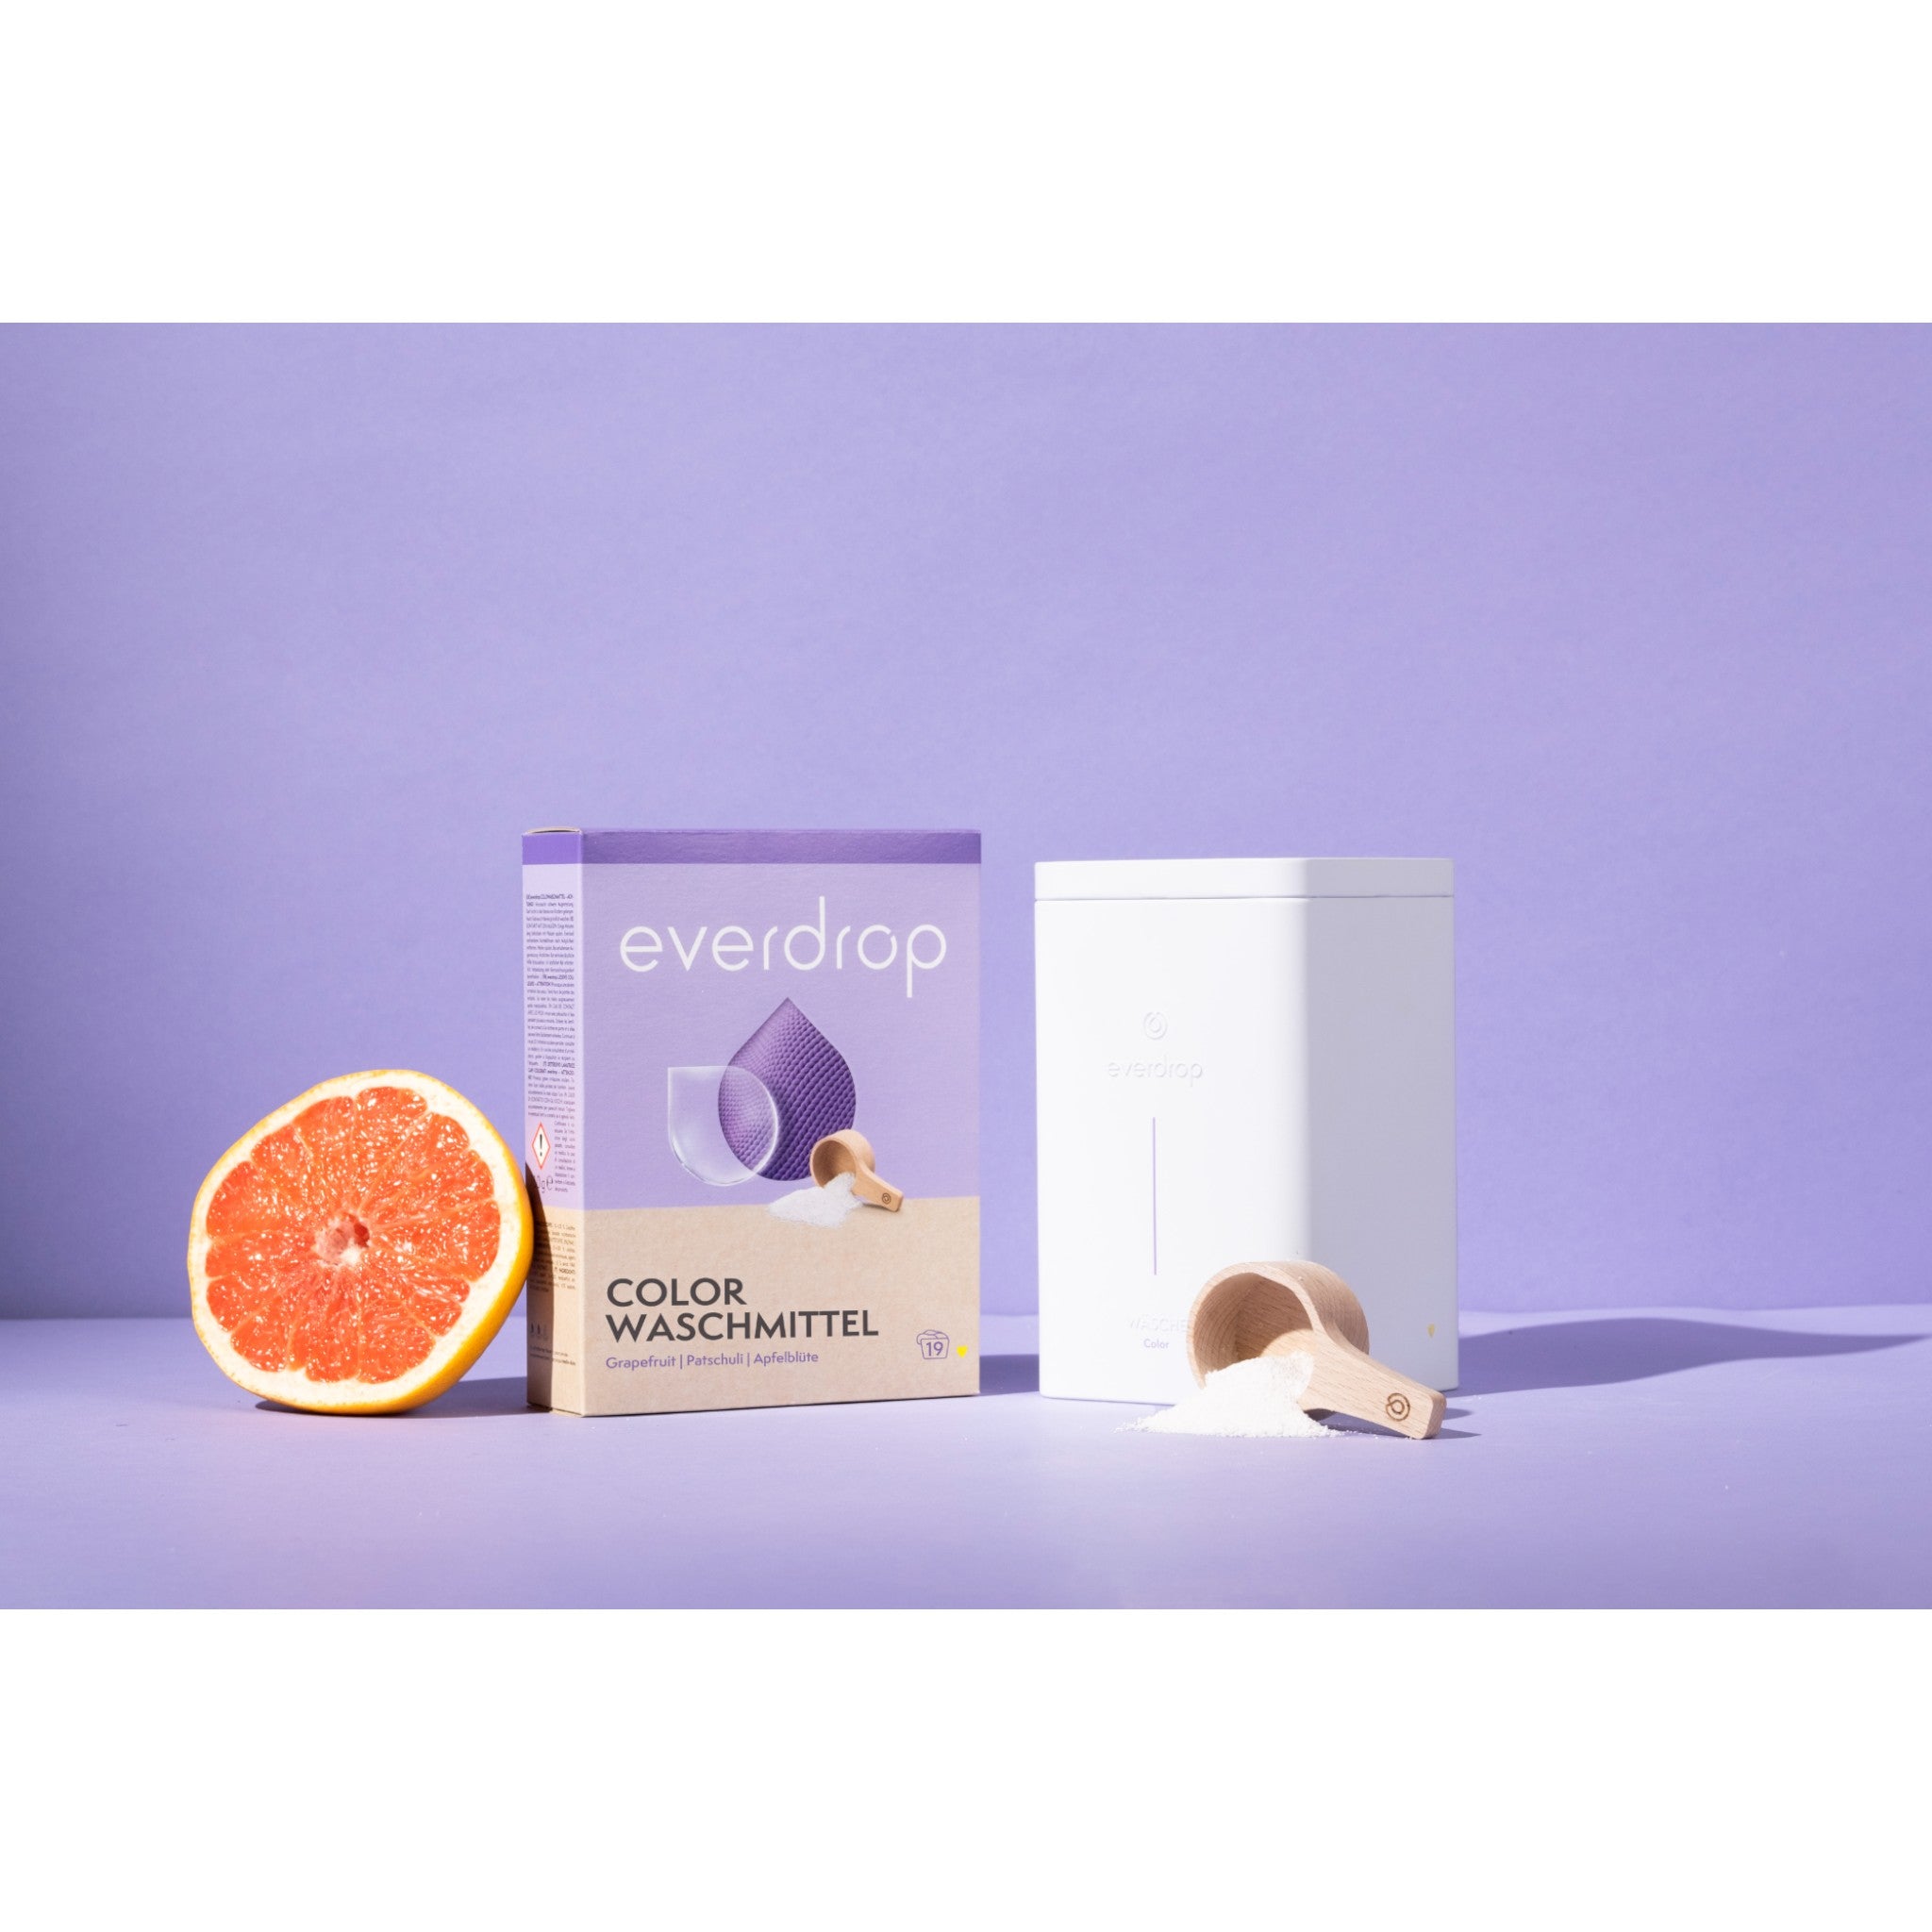 everdrop colorwaschmittel mit einer halben grapefruit und einem aufbewahrungsbehälter vor lila hintergrund